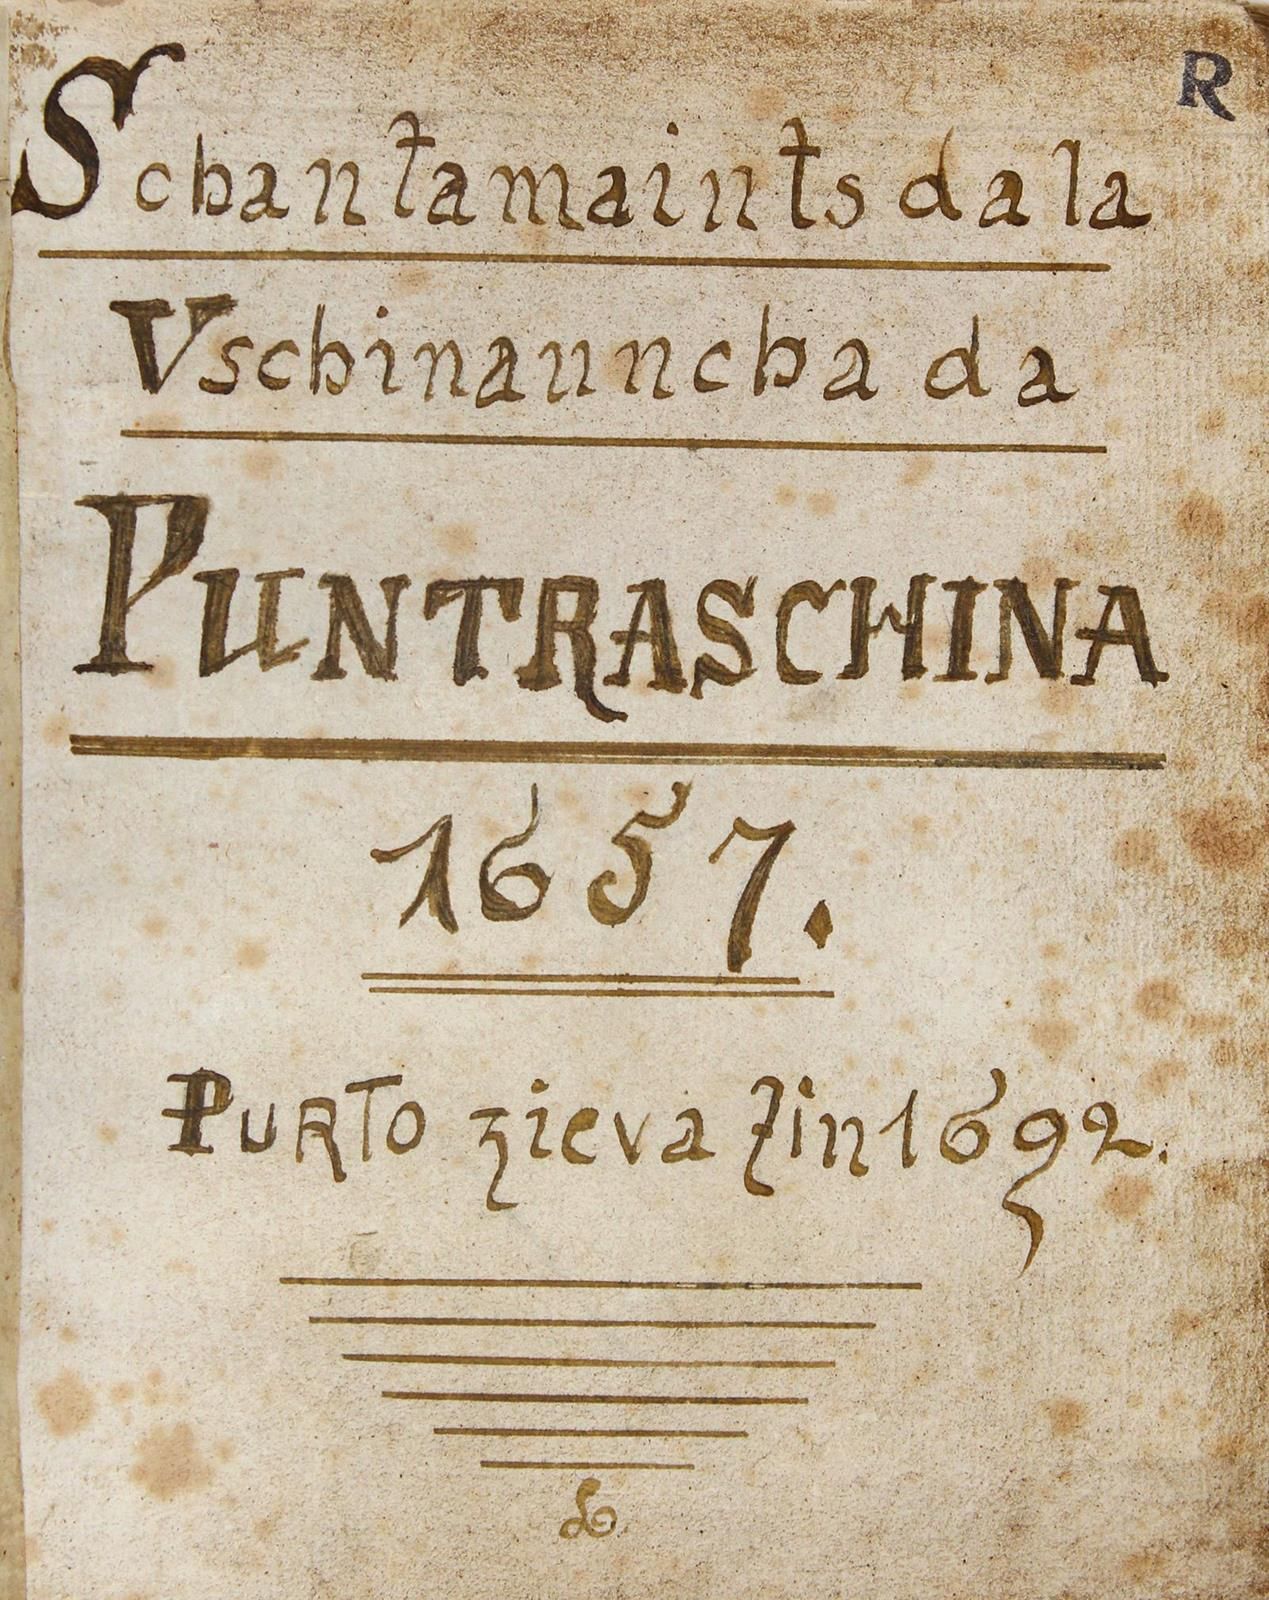 Schantamaints da la Vschinauncha da Puntraschina 1657 purto zieva zin 1692. Rhae&hellip;